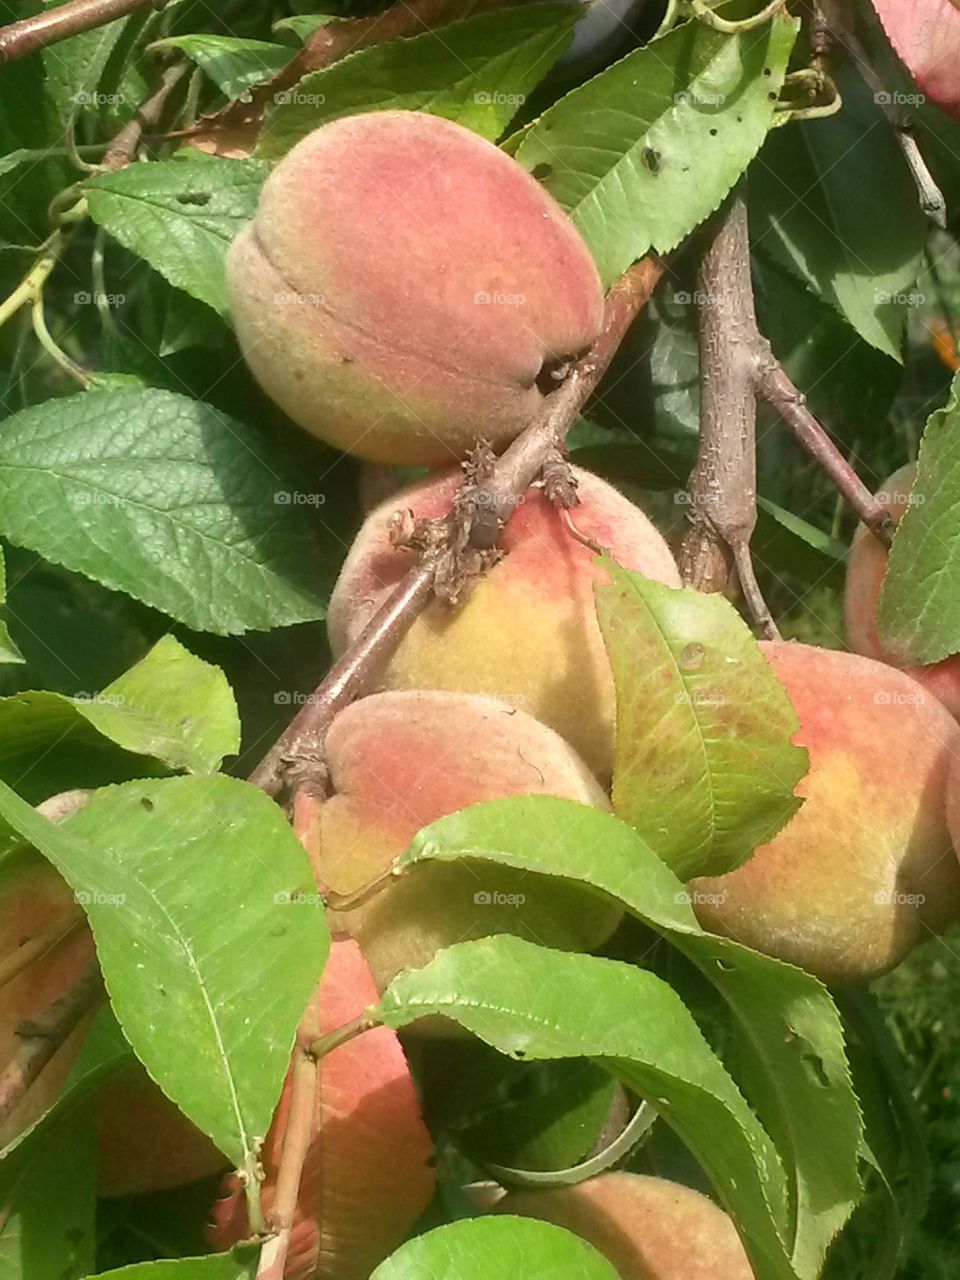 The peaches